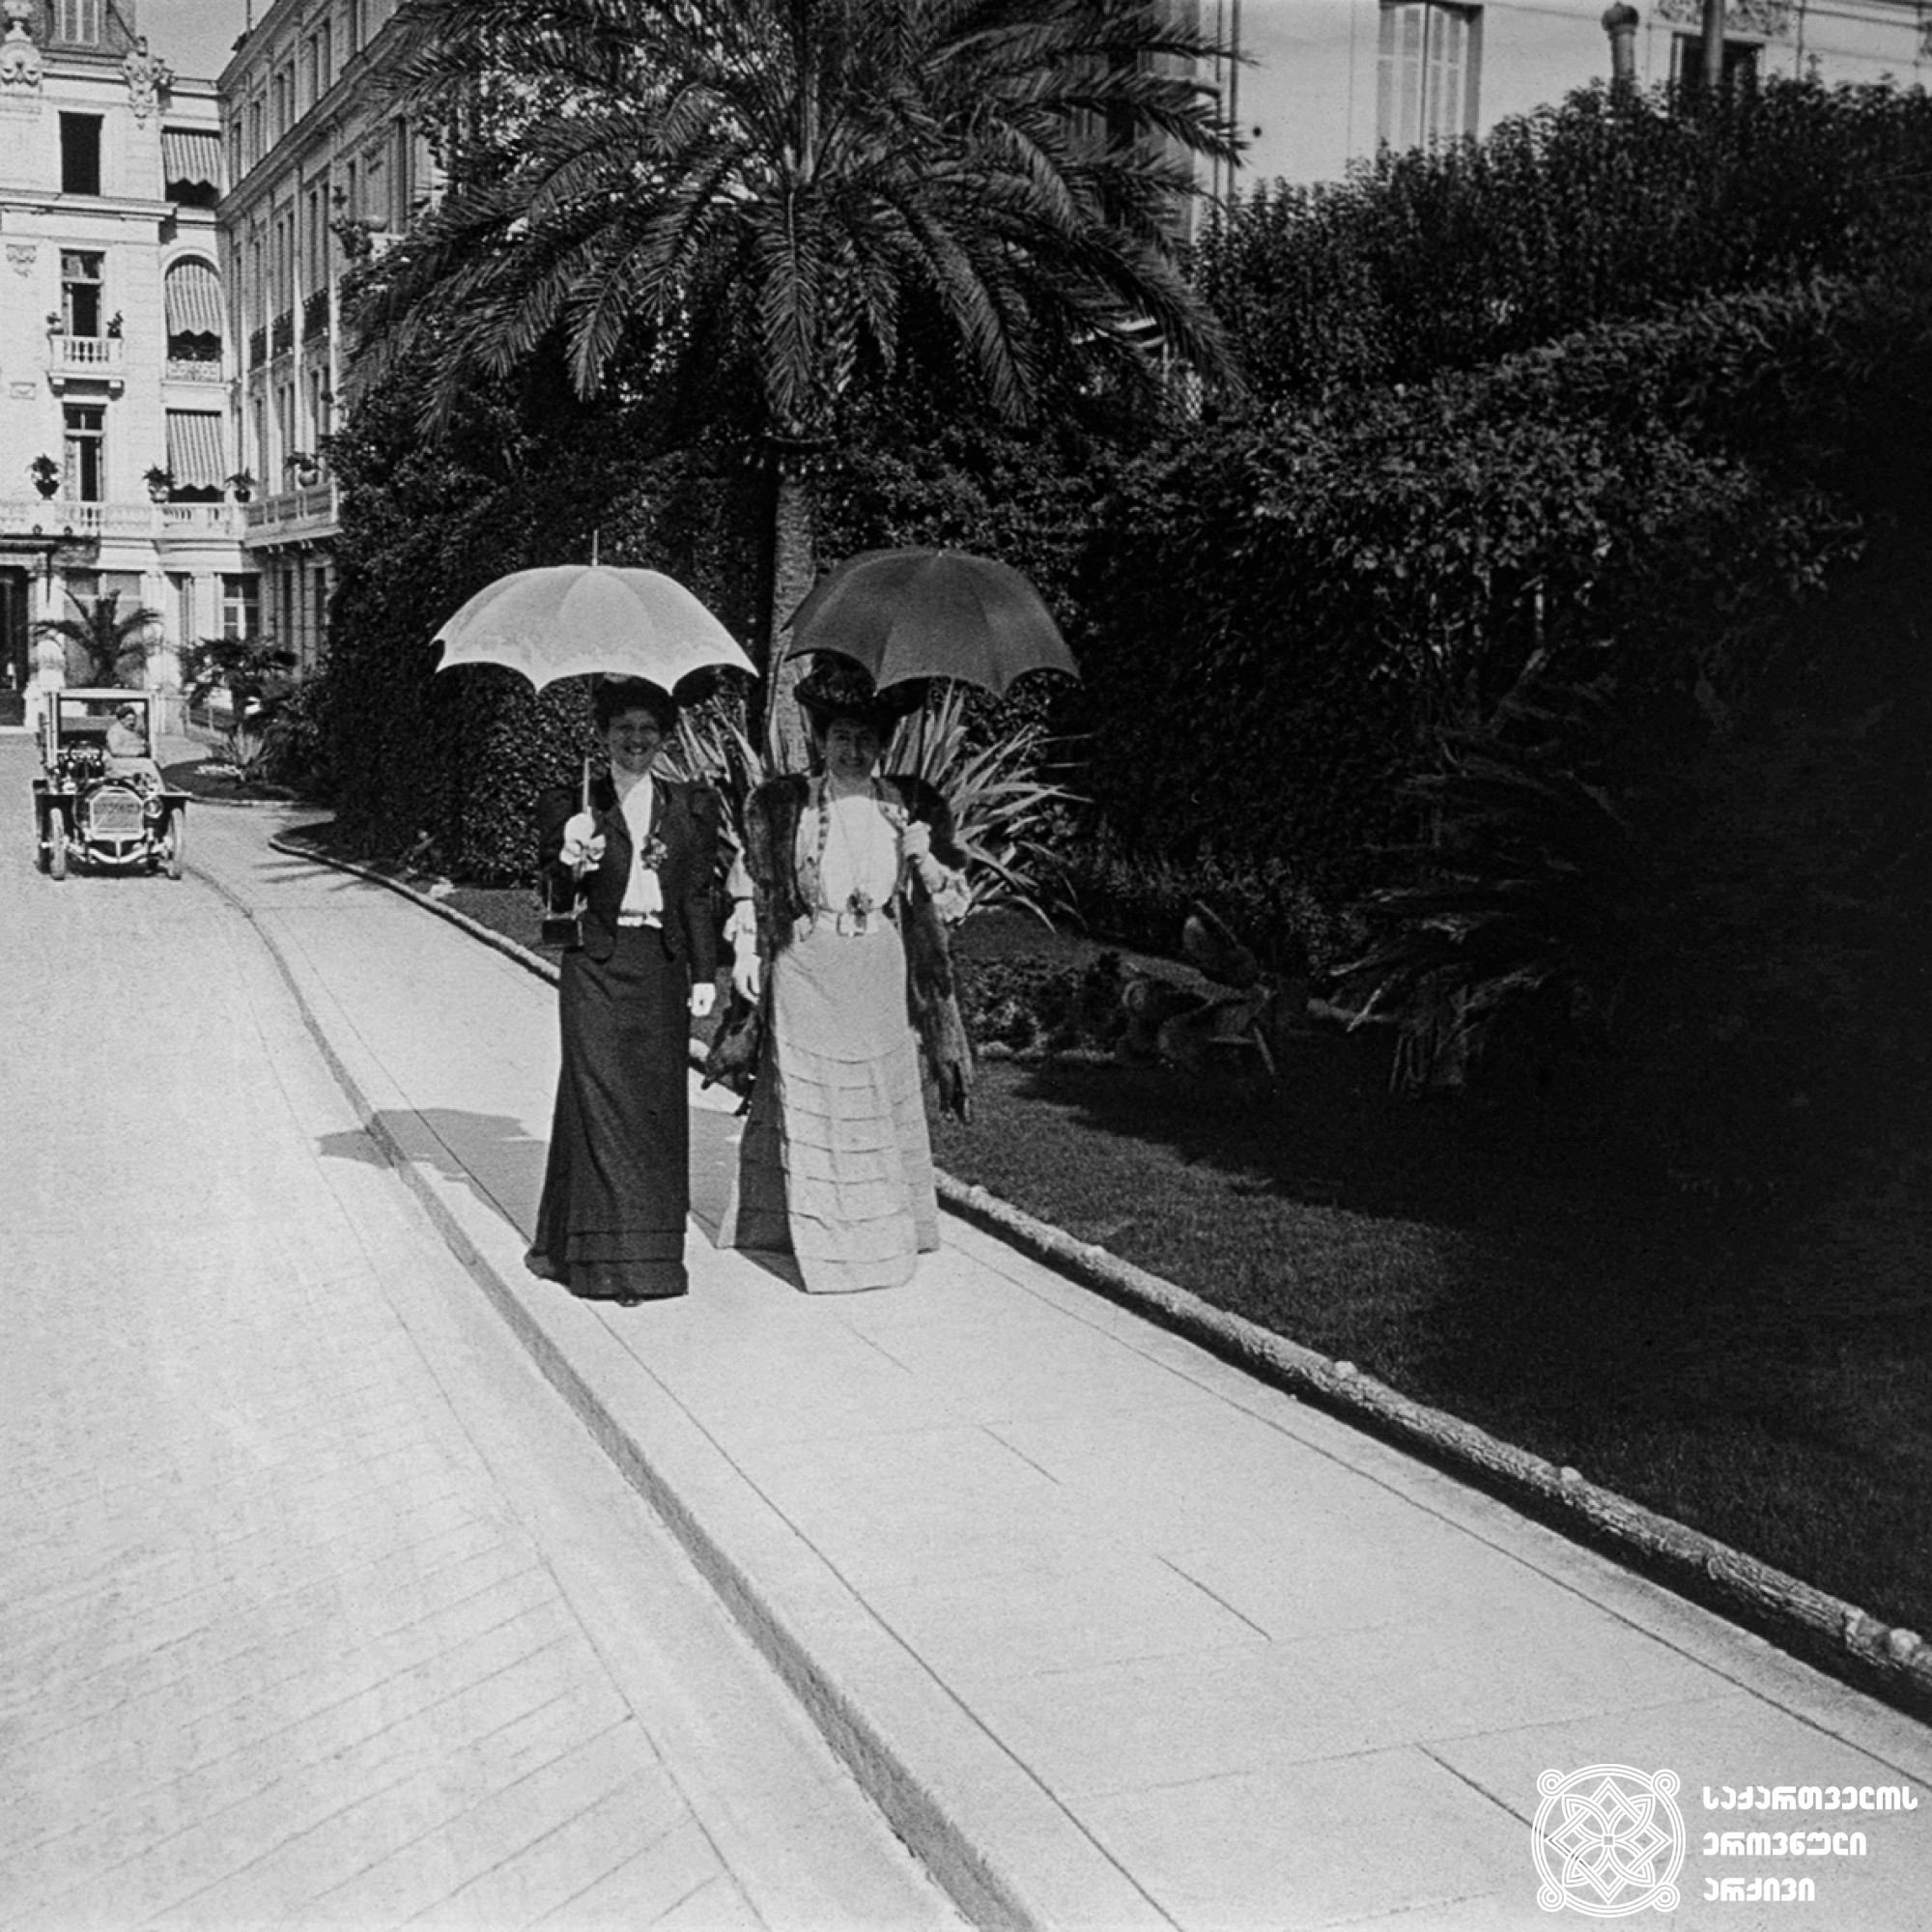 ქალბატონი კაპშა და ე.ი. თამამშევა სასტუმრო „მეტროპოლთან“, მონტე-კარლო, მონაკო <br>
1907 წელი <br>
გიგლო ყარალაშვილის კოლექცია <br>

Ms. Kapsha and E.I. Tamasheva at the Metropolis Hotel, Monte Carlo, Monaco <br>
1907 <br>
Giglo Karalashvili collection